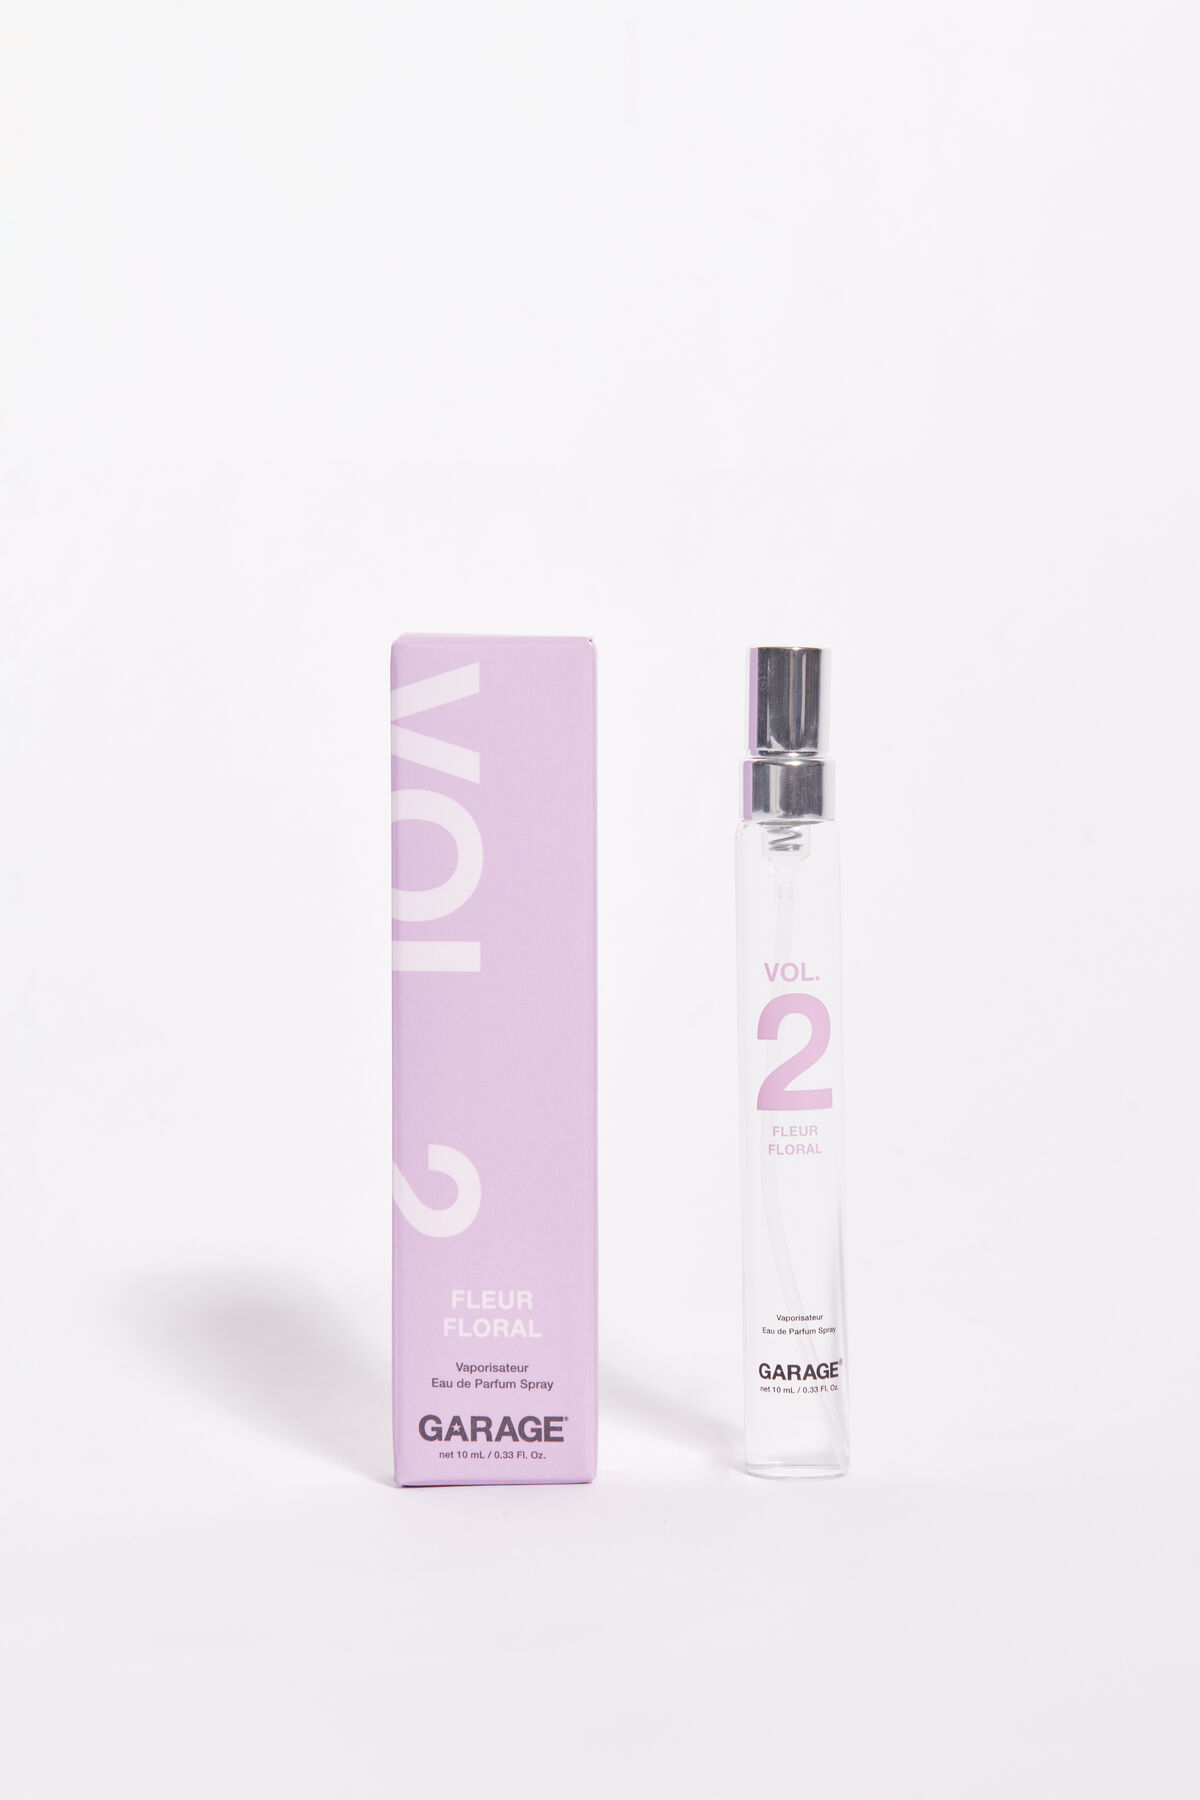 Garage Vol. 2 : Fleur - Parfum par Garage. 2